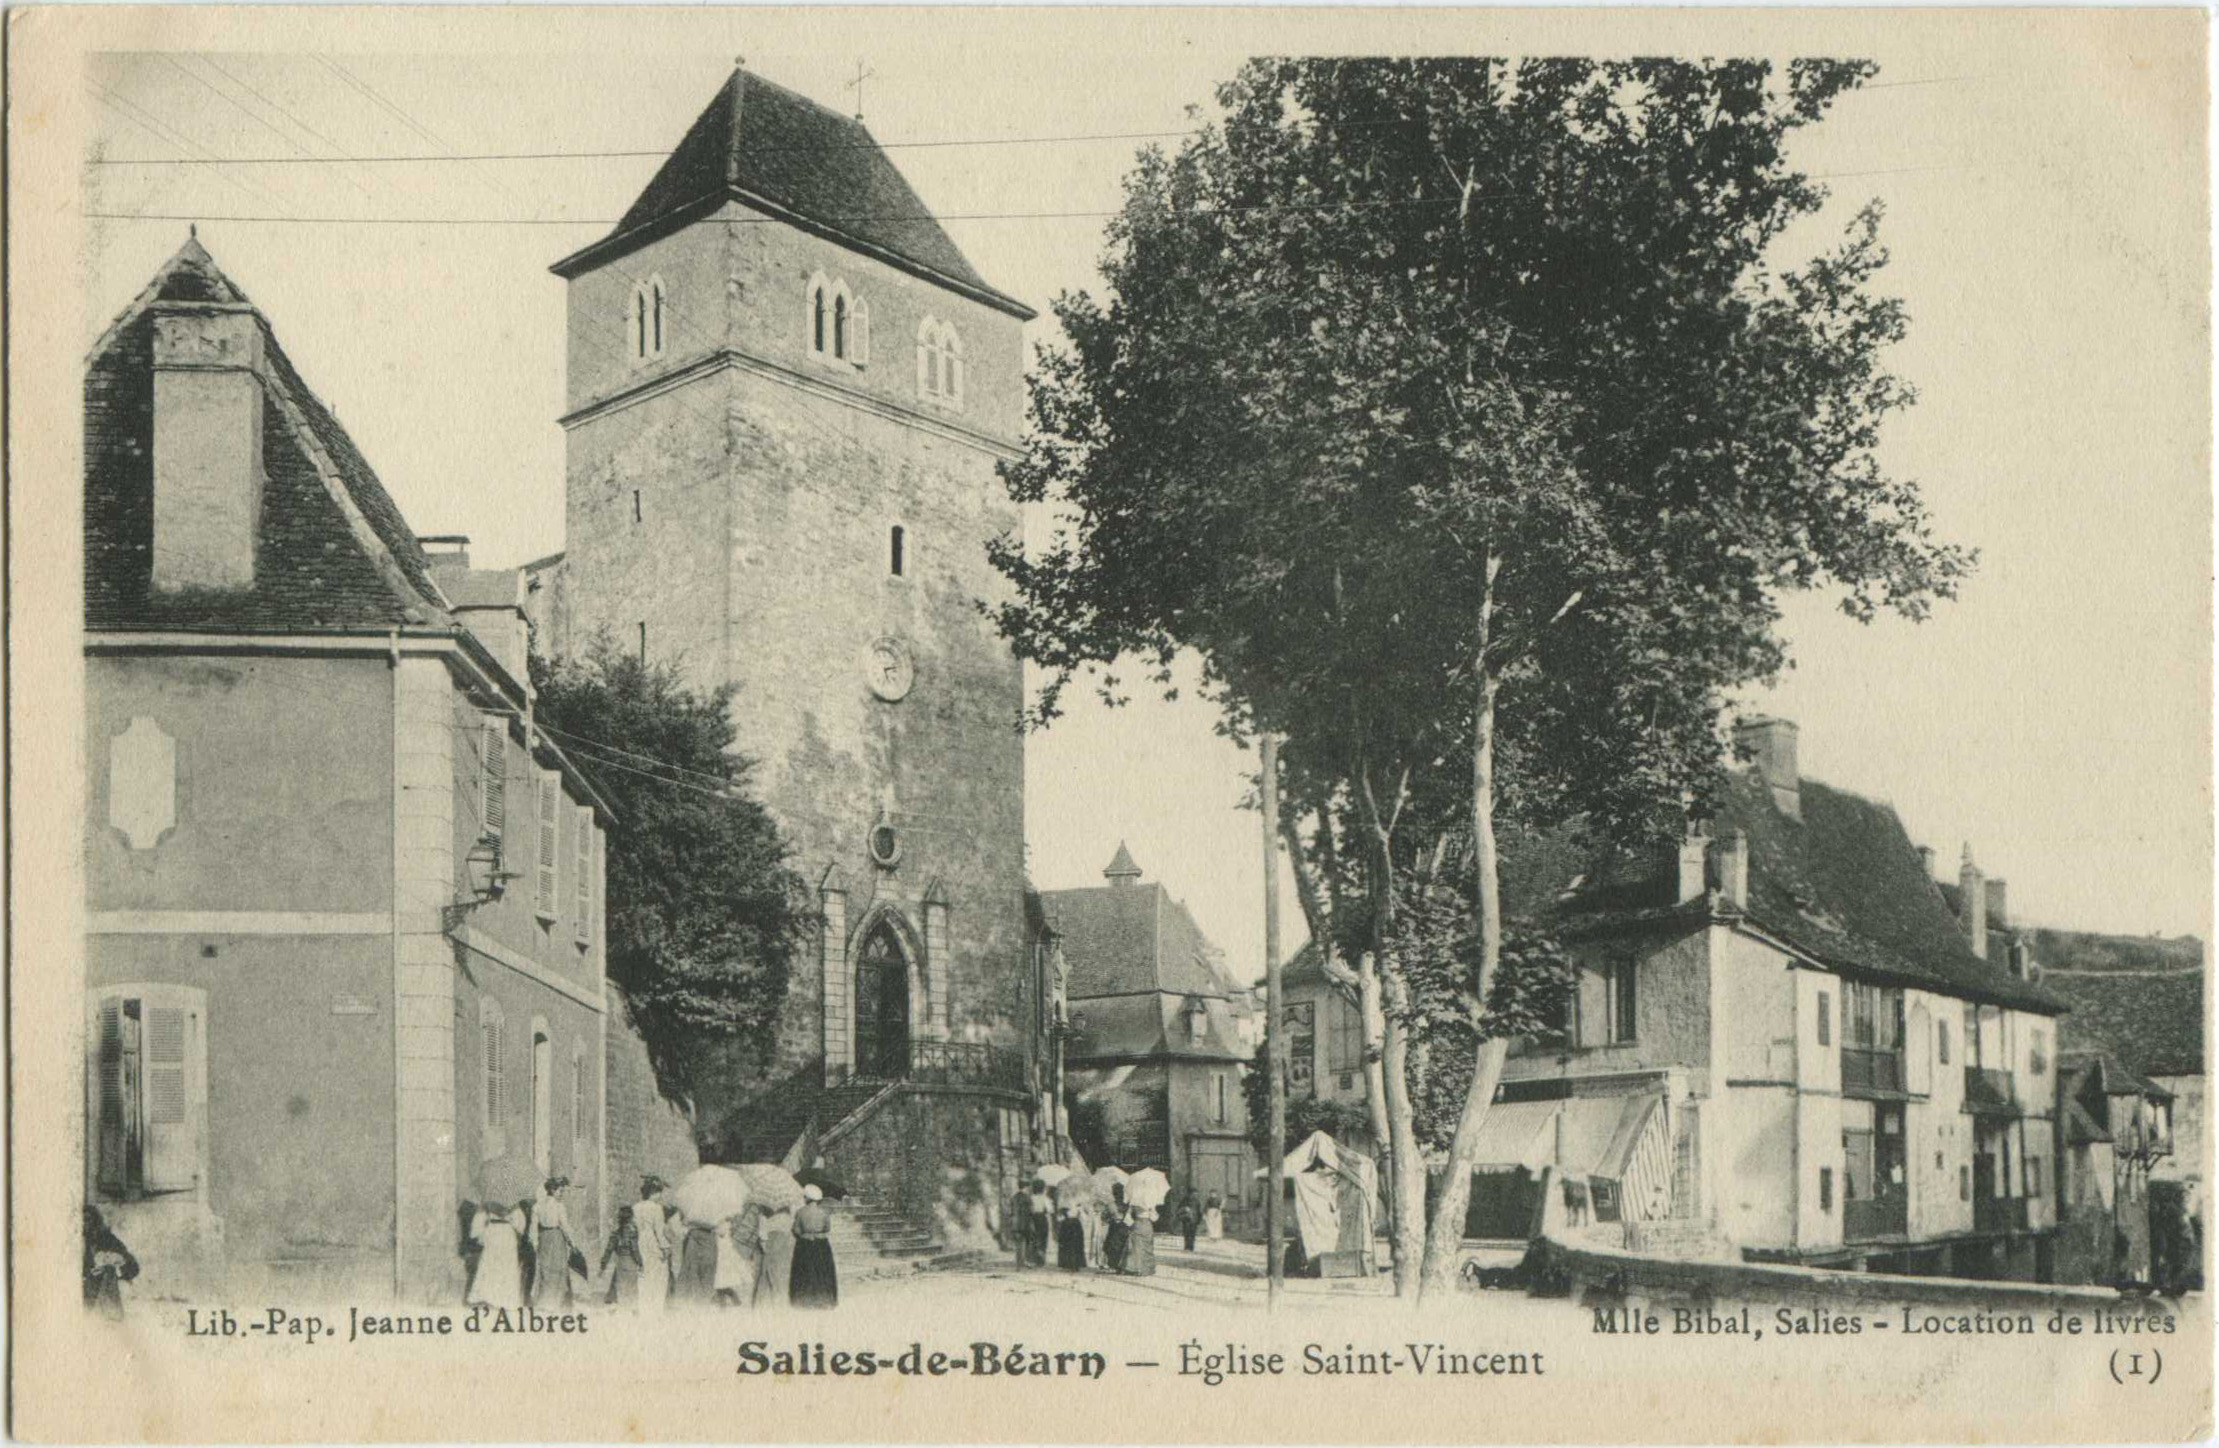 Salies-de-Béarn - Église Saint-Vincent